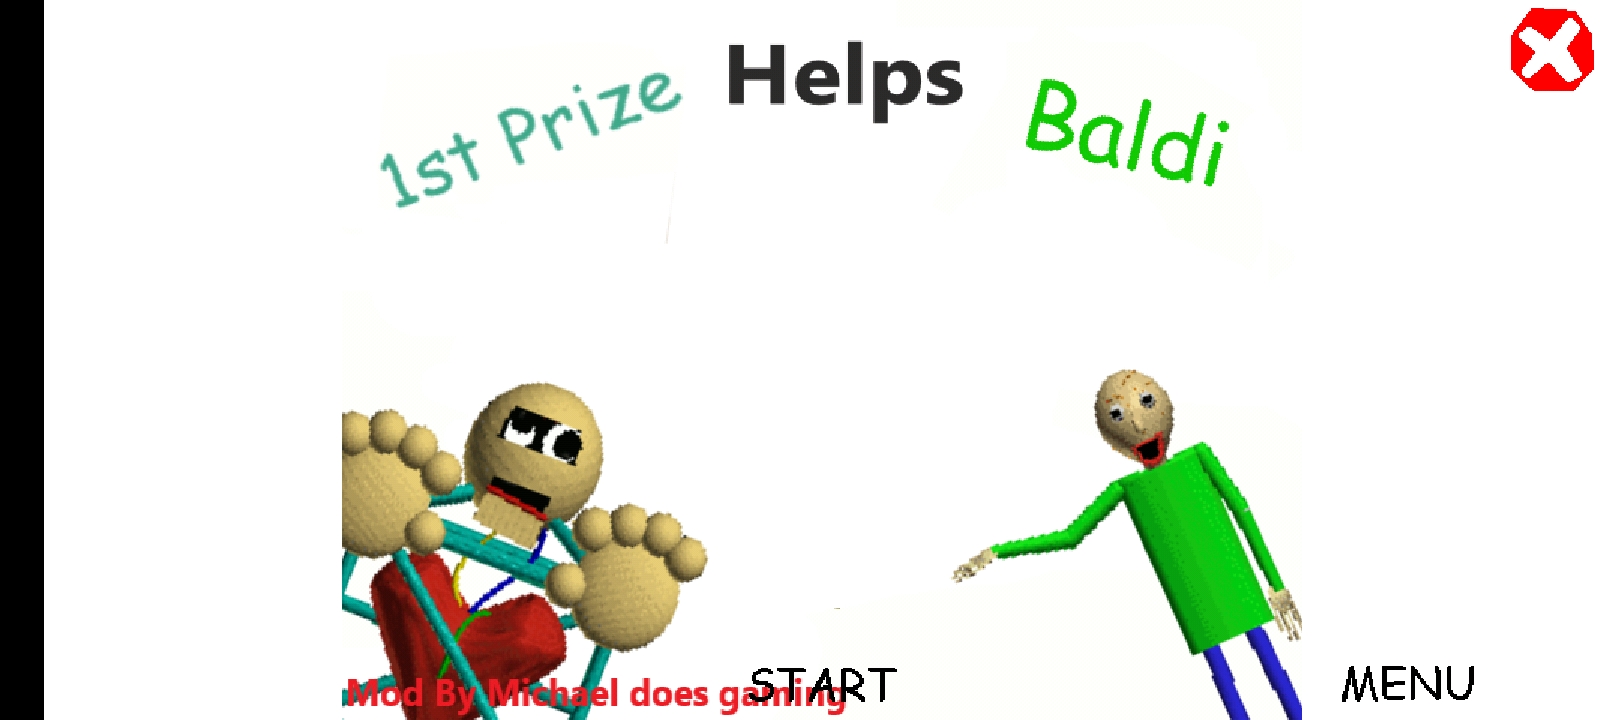 Baldi help. Baldi's Basics 1st Prize. Baldi s Basics 1st Prize helps Baldi. 1st Prize helps Baldi. 1st Prize helps Baldi Android.